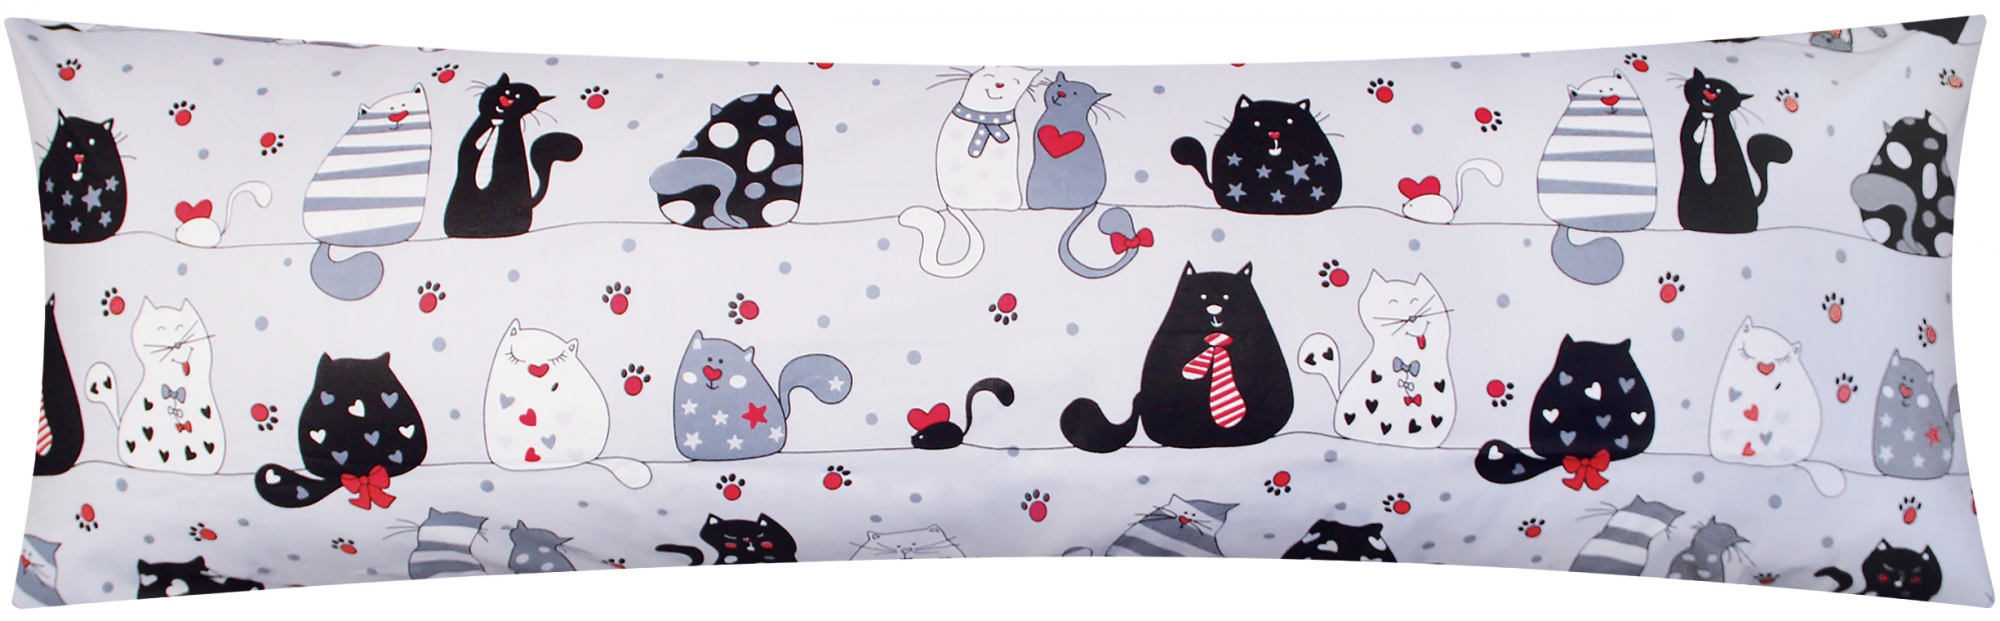 Baumwoll Renforcé Seitenschläferkissen Bezug 40x145cm - Katzen mit Pfoten, Sternen und Herzen in grau, schwarz und rot - 100% Baumwolle Stillkissenbezug (KY-Katzen-Grau)